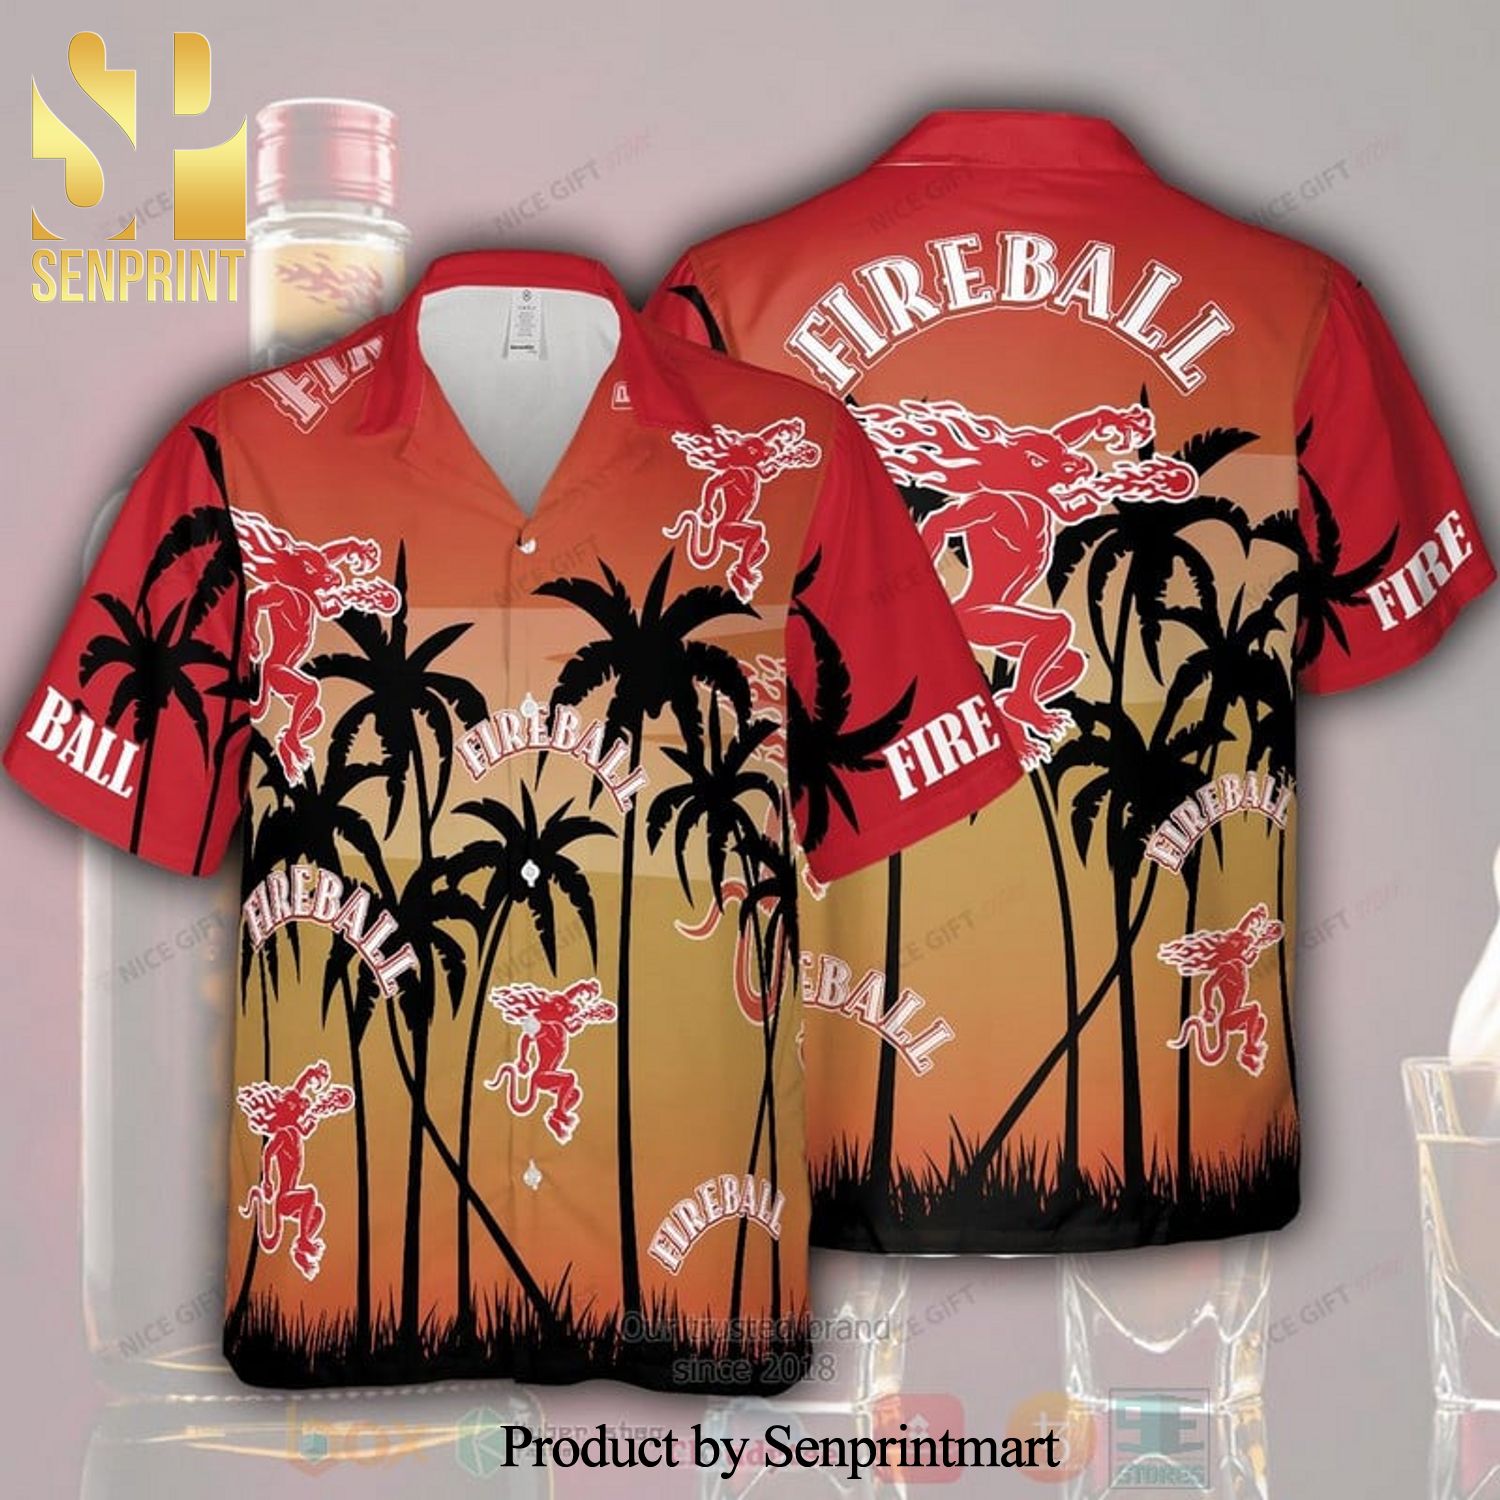 Fireball Whisky Palm Tree New Fashion Full Printed Hawaiian Shirt